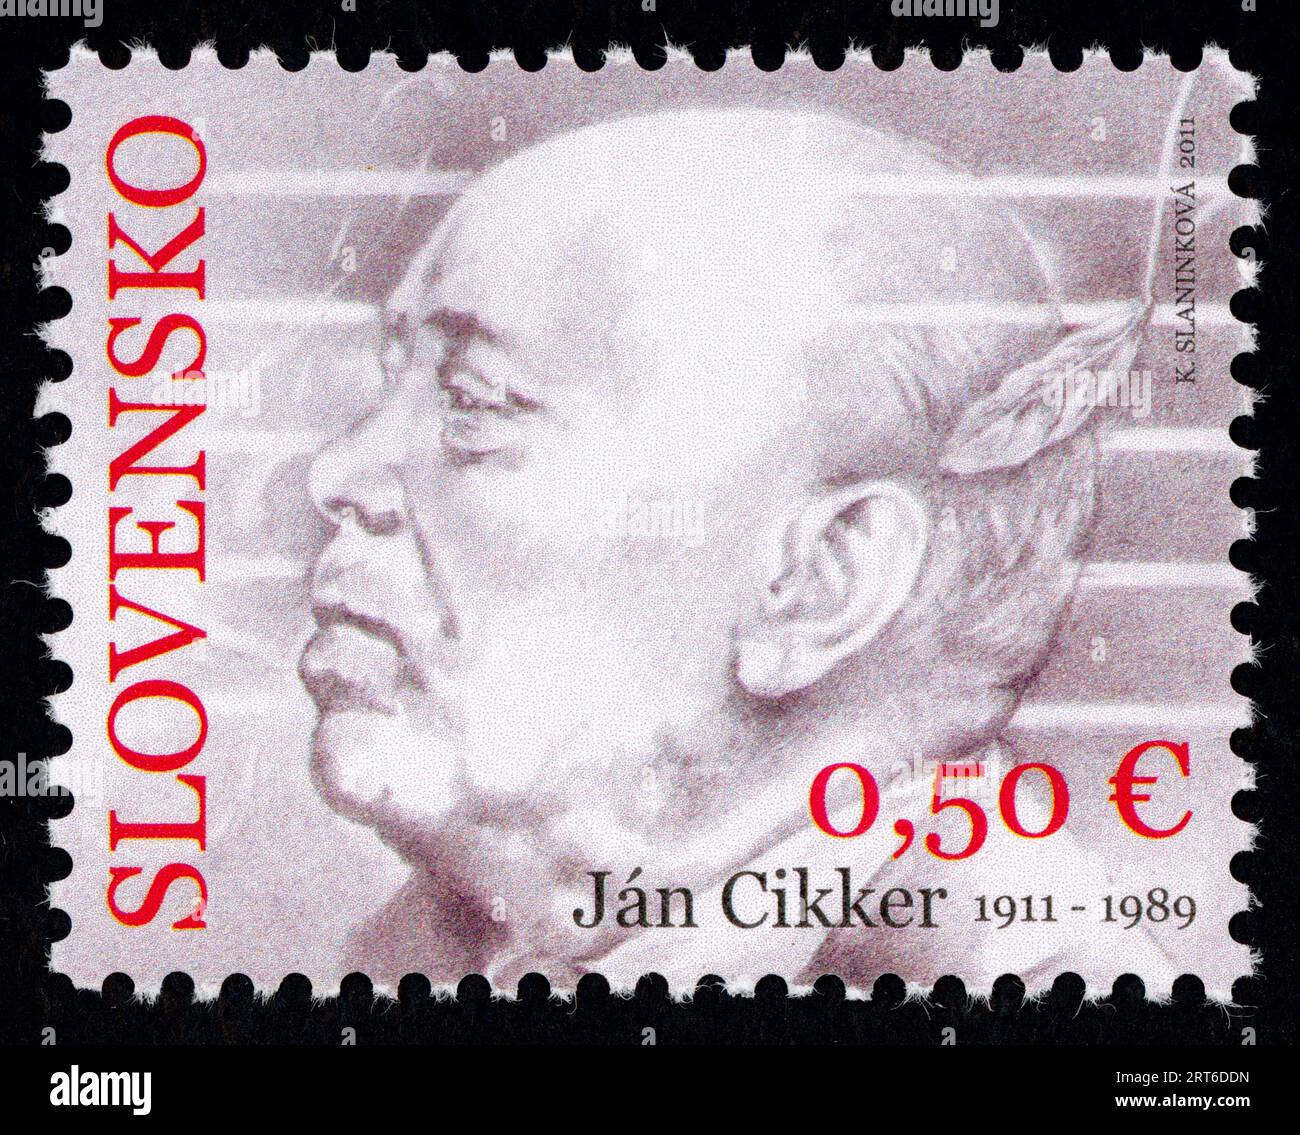 Ján Cikker (1911 – 1989). Timbre-poste émis en Slovaquie en 2011. Ján Cikker était un compositeur slovaque, un des principaux représentants de la musique classique slovaque moderne. Il a reçu le titre d'artiste national en Slovaquie, le prix Herder (1966) et le prix international de musique IMC-UNESCO (1979). Banque D'Images